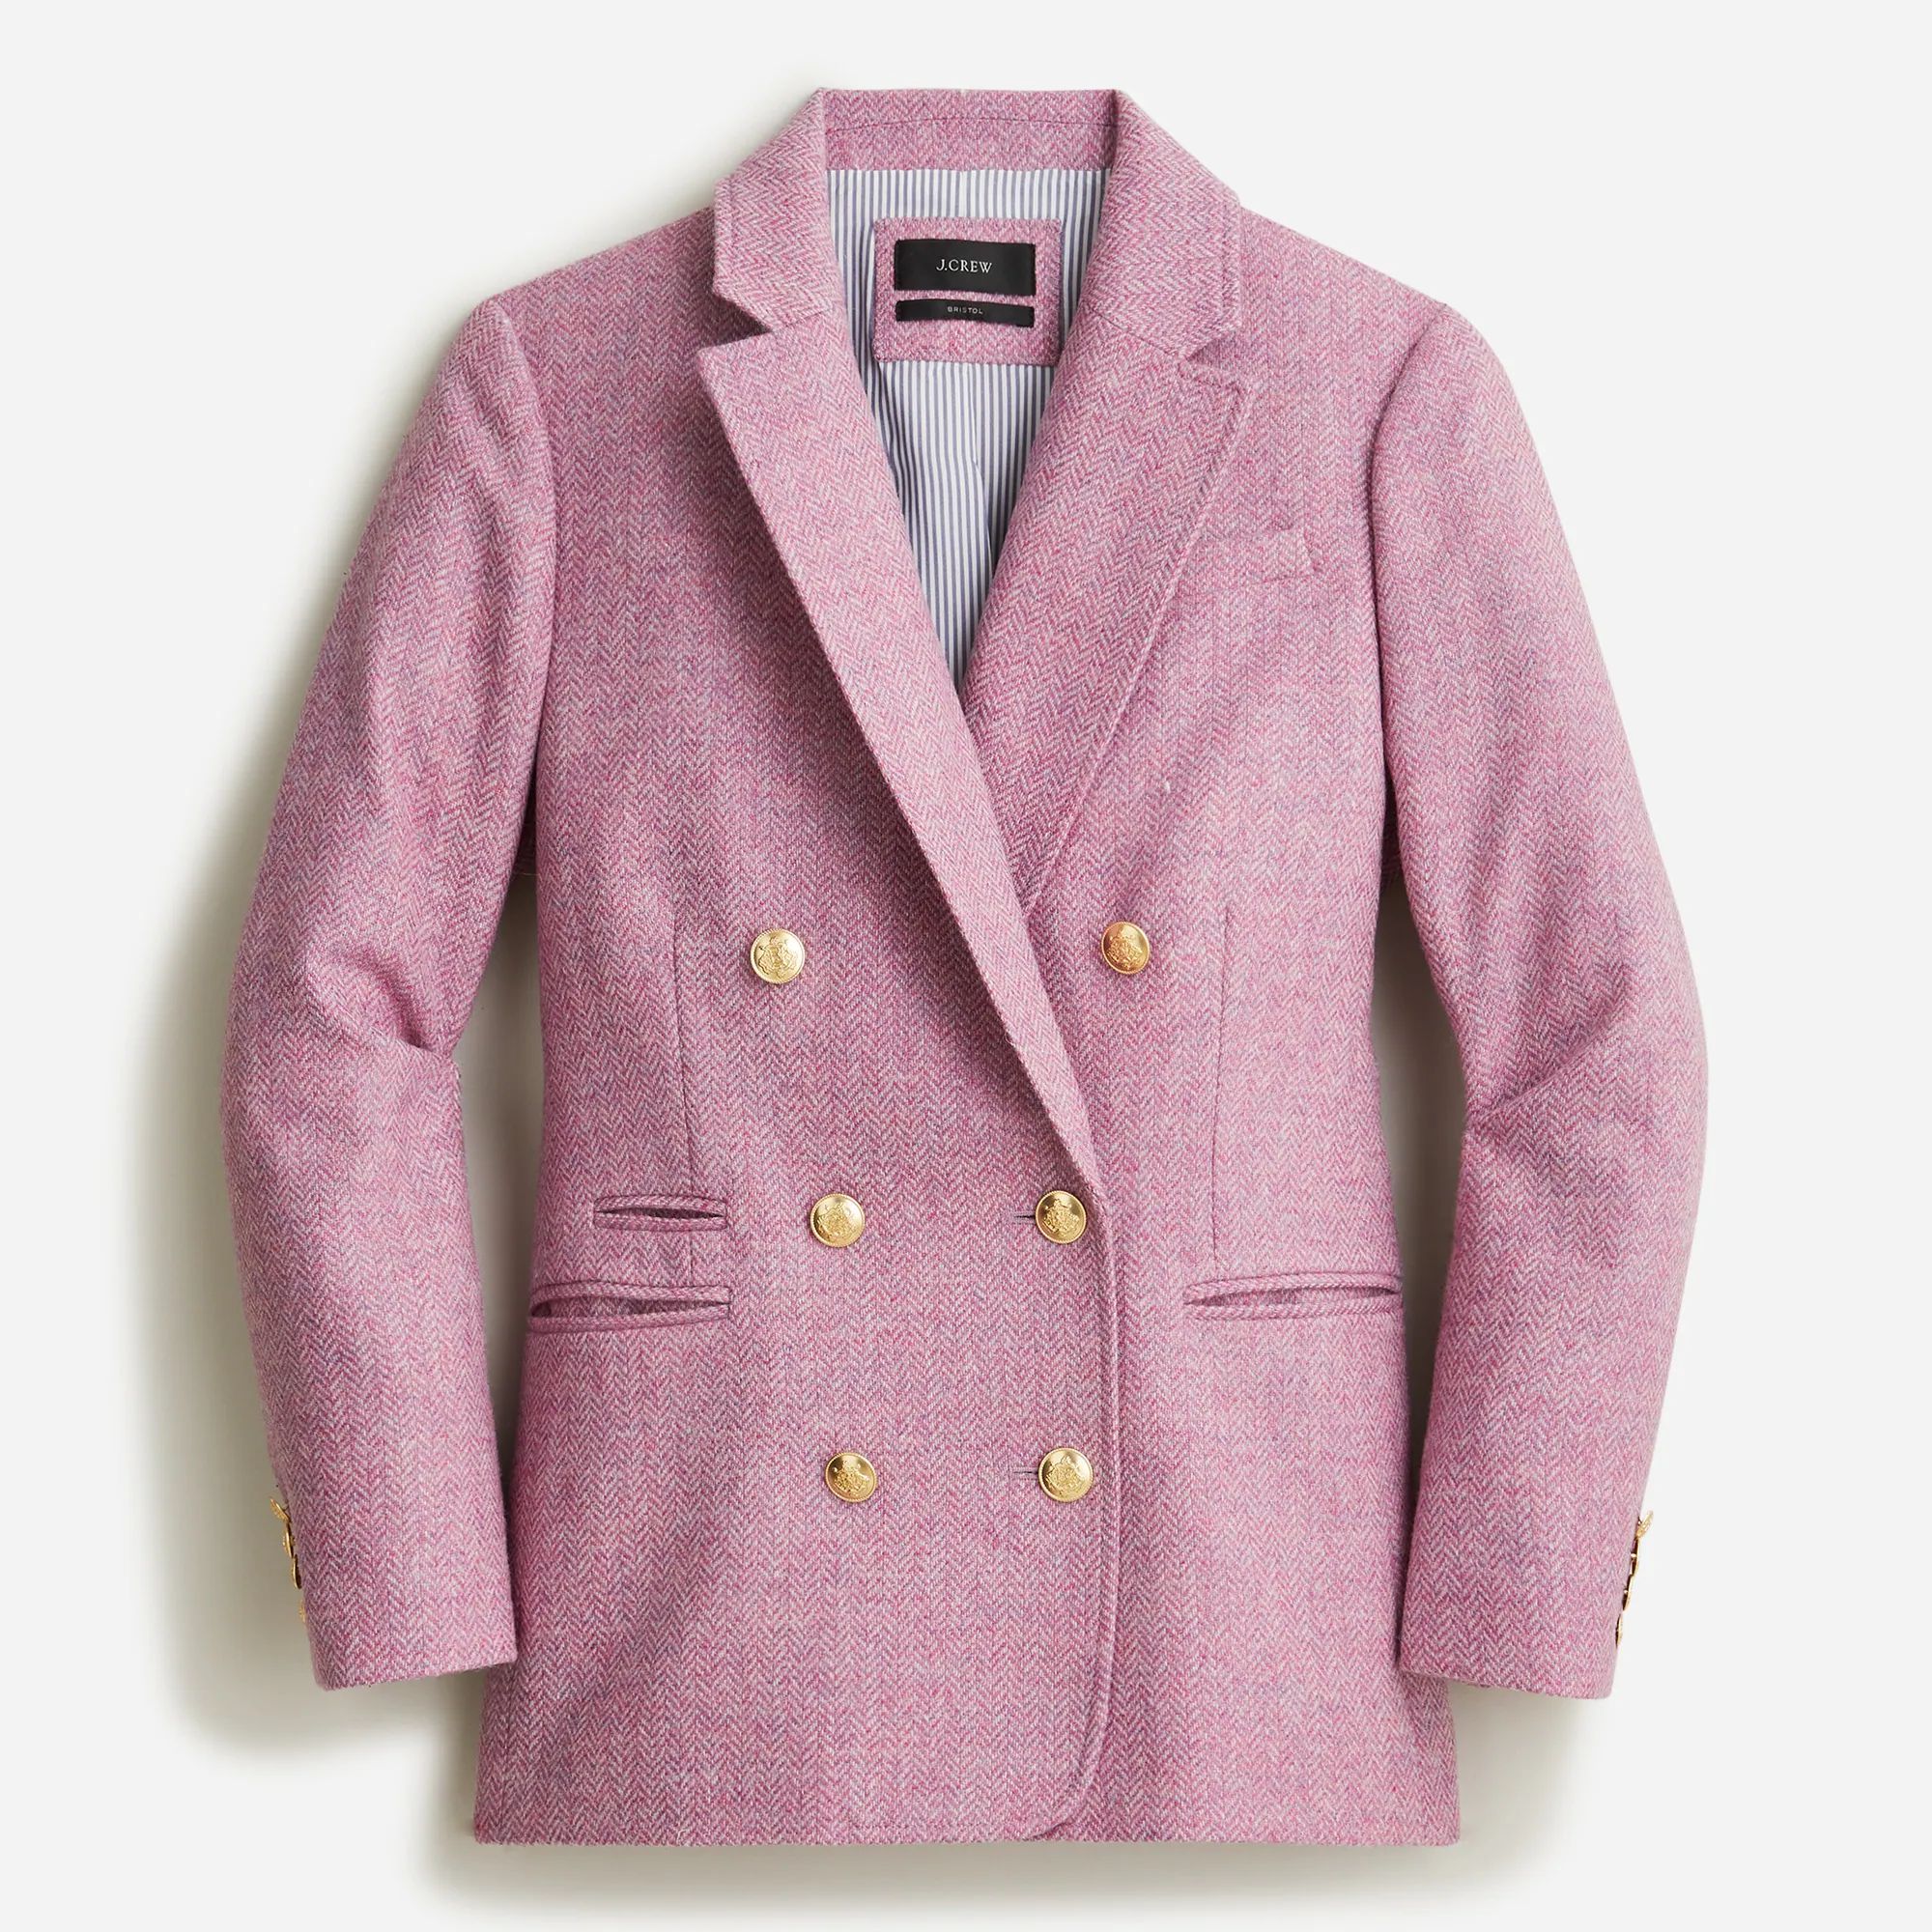 Bristol blazer in lilac herringbone wool | J.Crew US